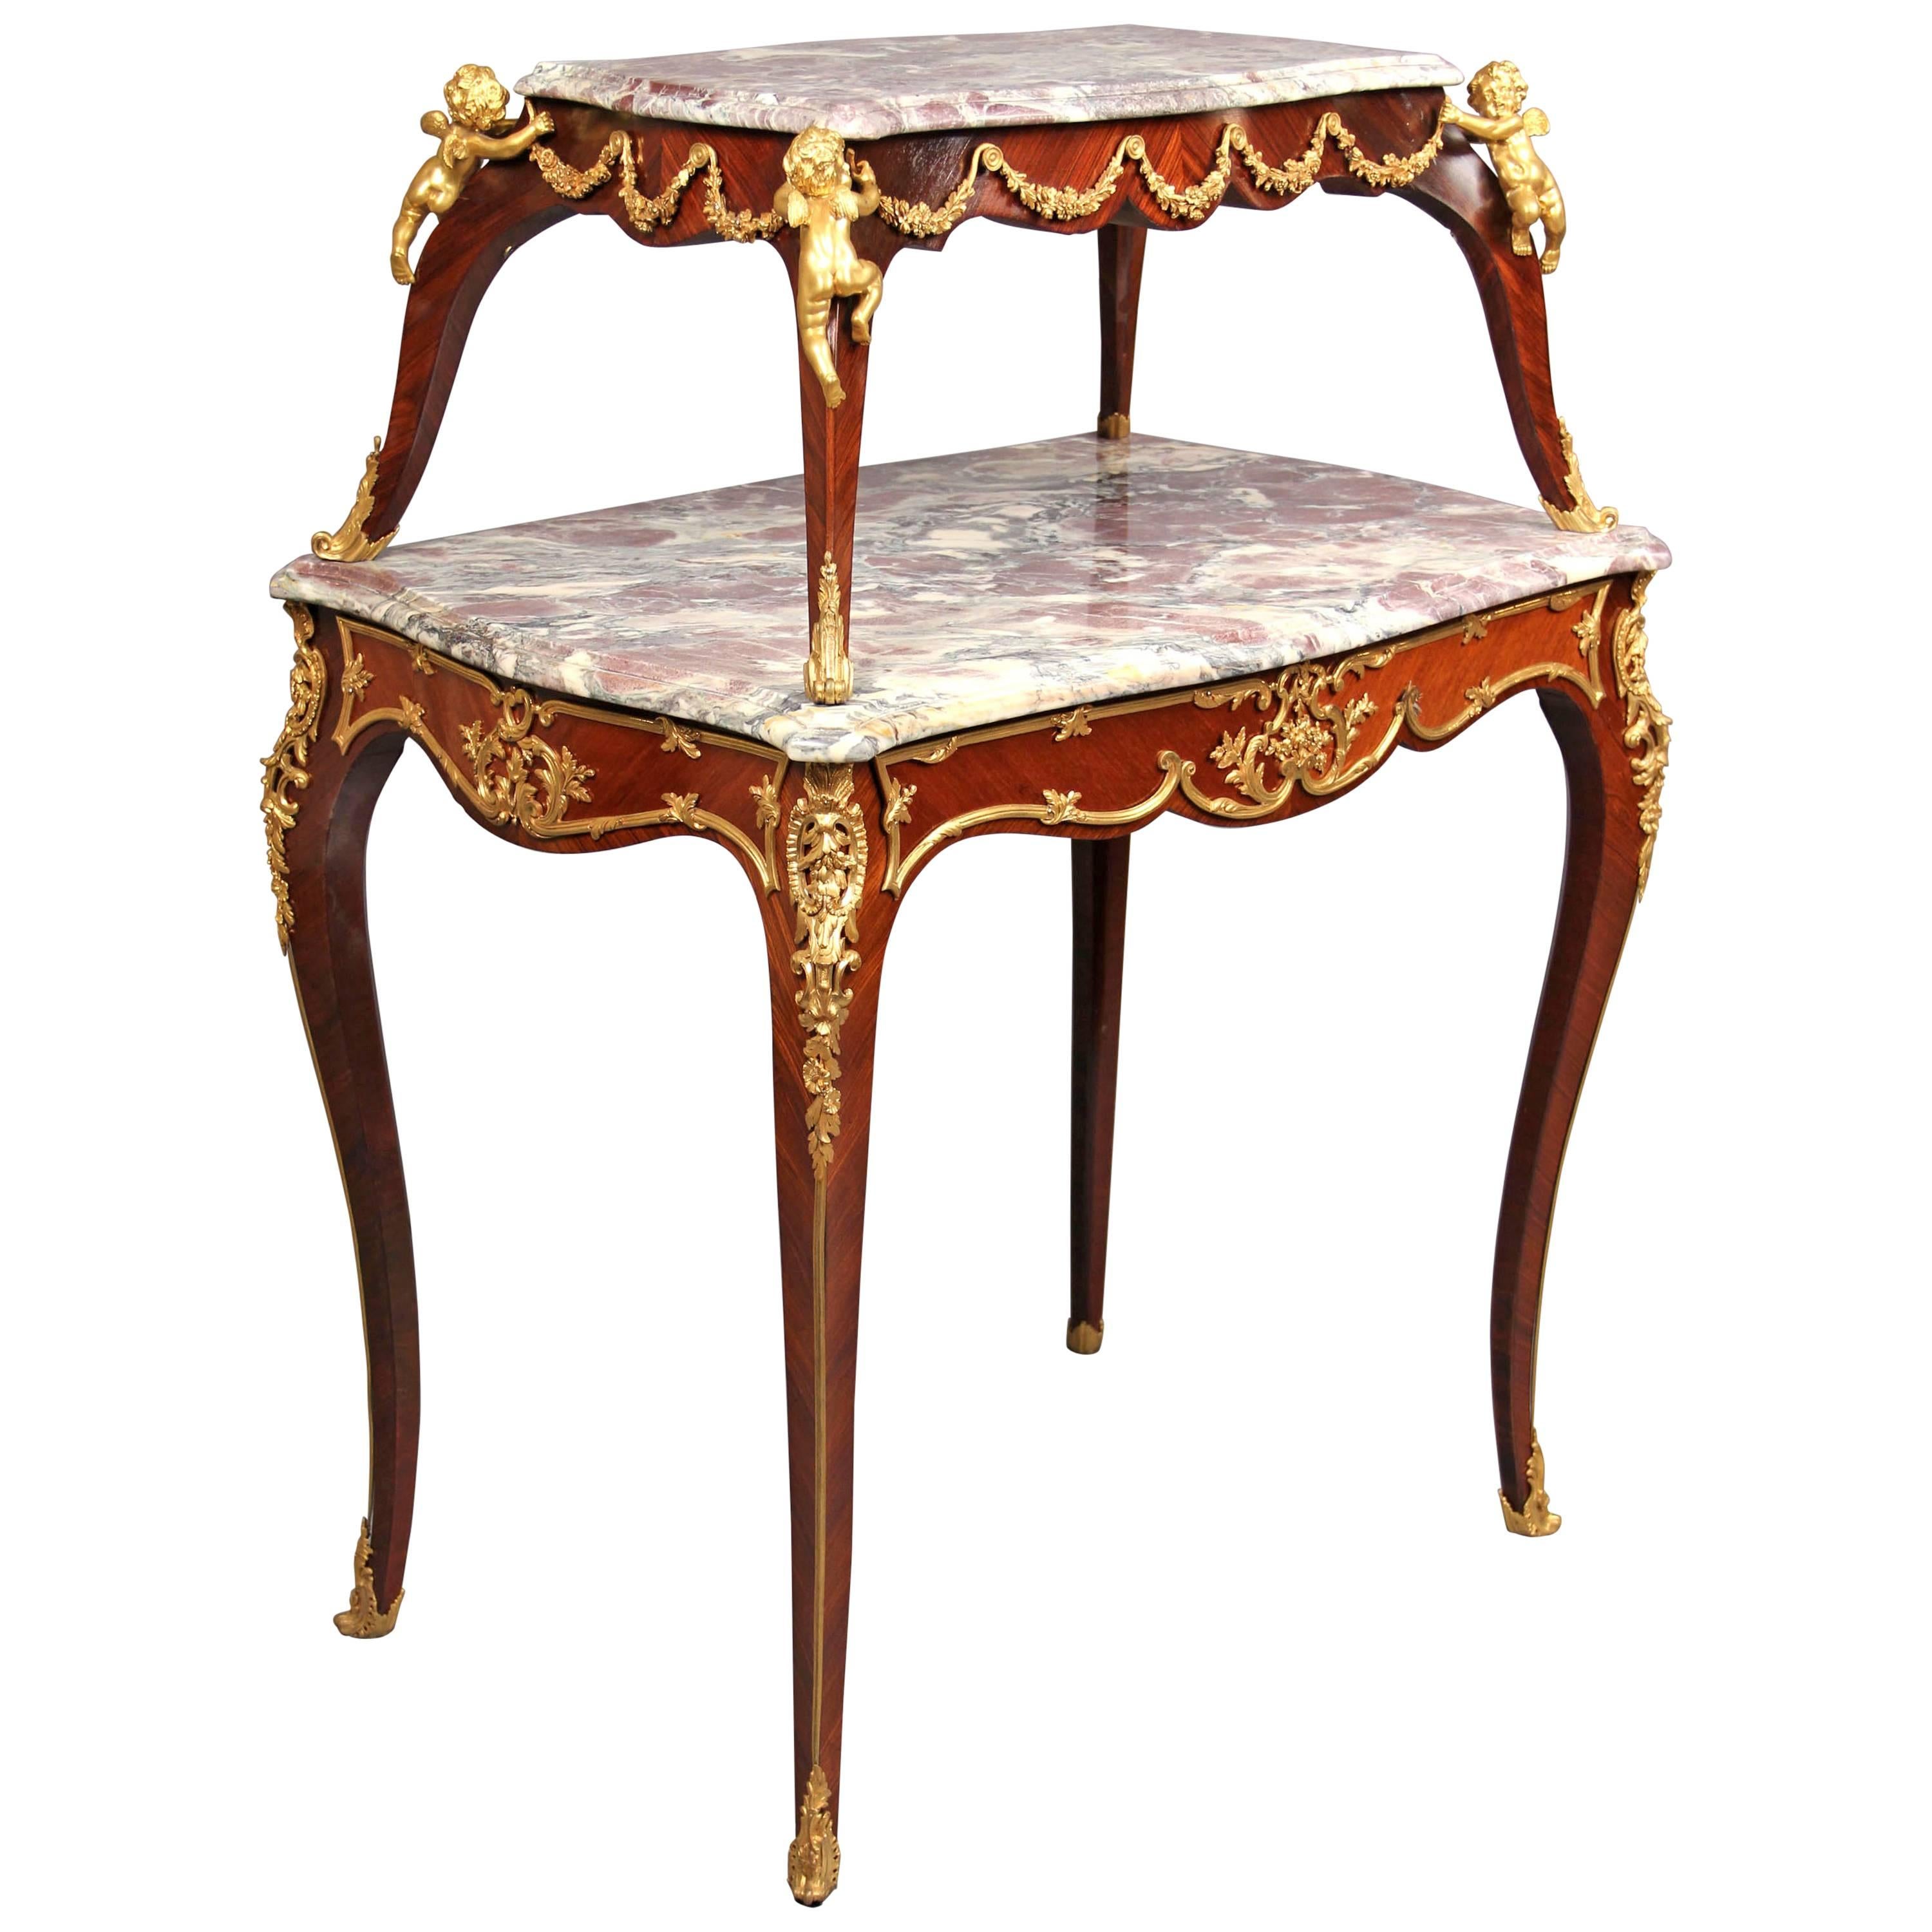 Table à thé de style Louis XV de la fin du XIXe siècle montée sur bronze doré